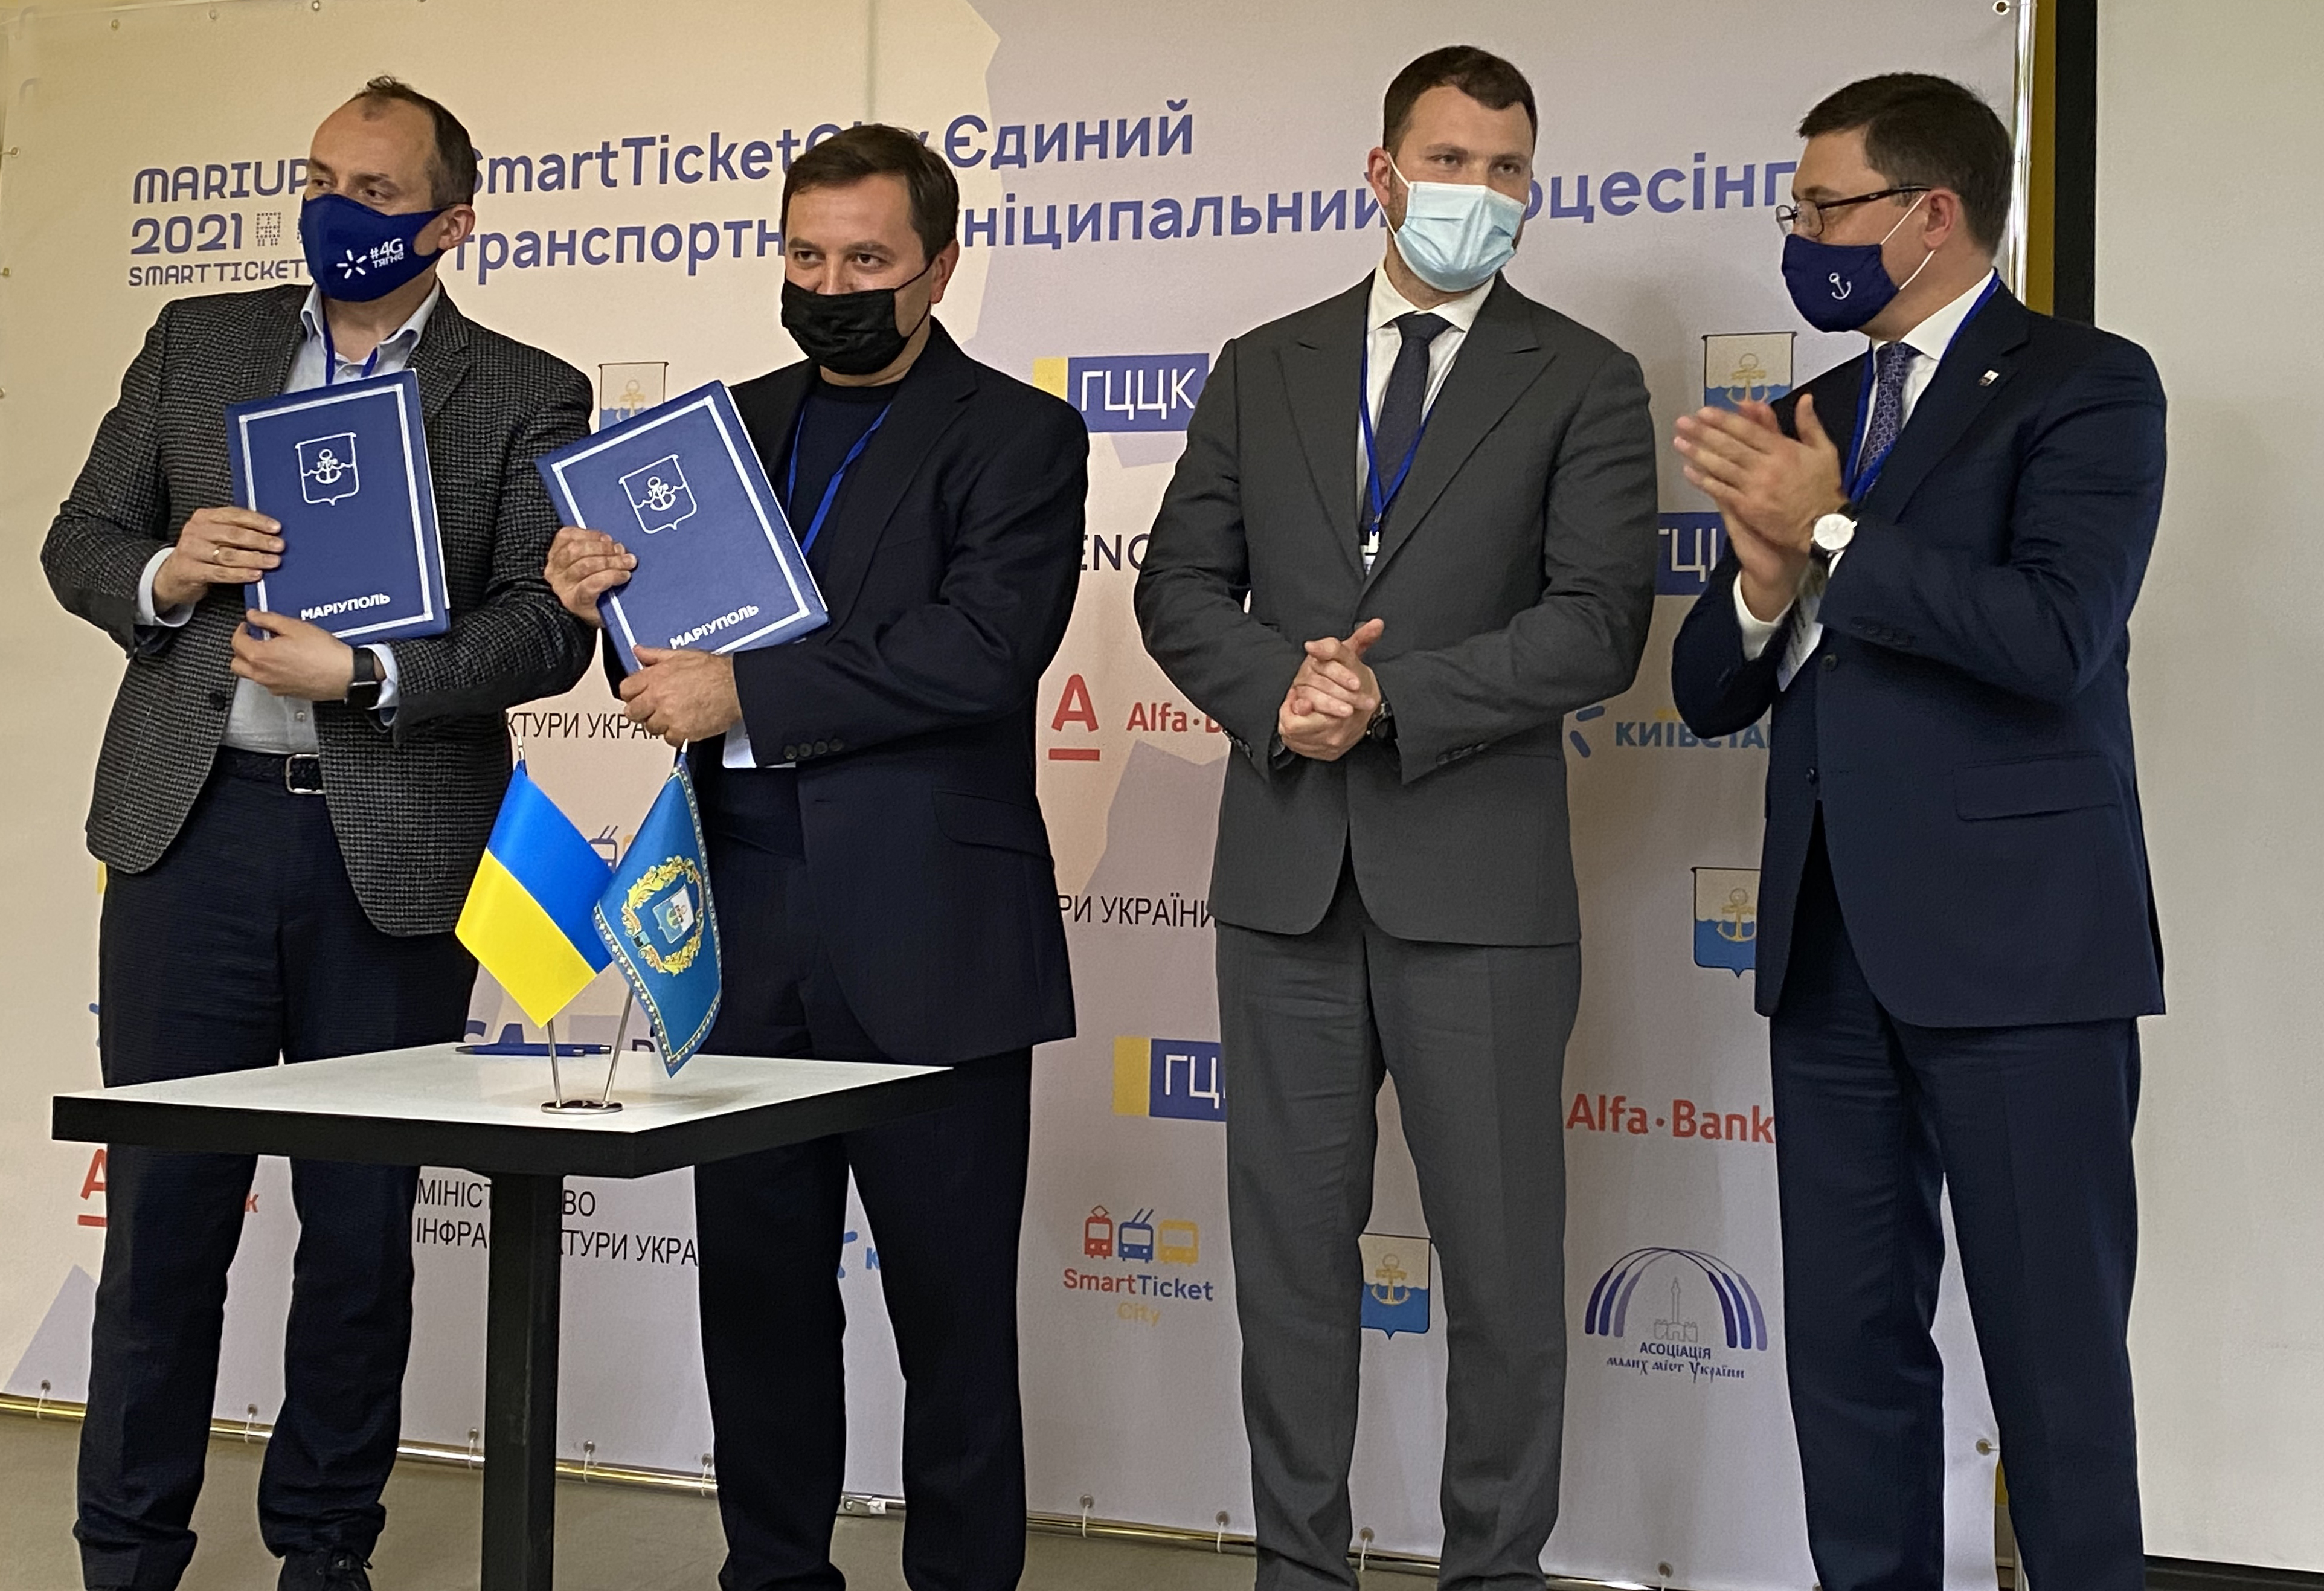 Киевстар будет предоставлять цифровые решения для развития инфраструктурных проектов в городах Украины